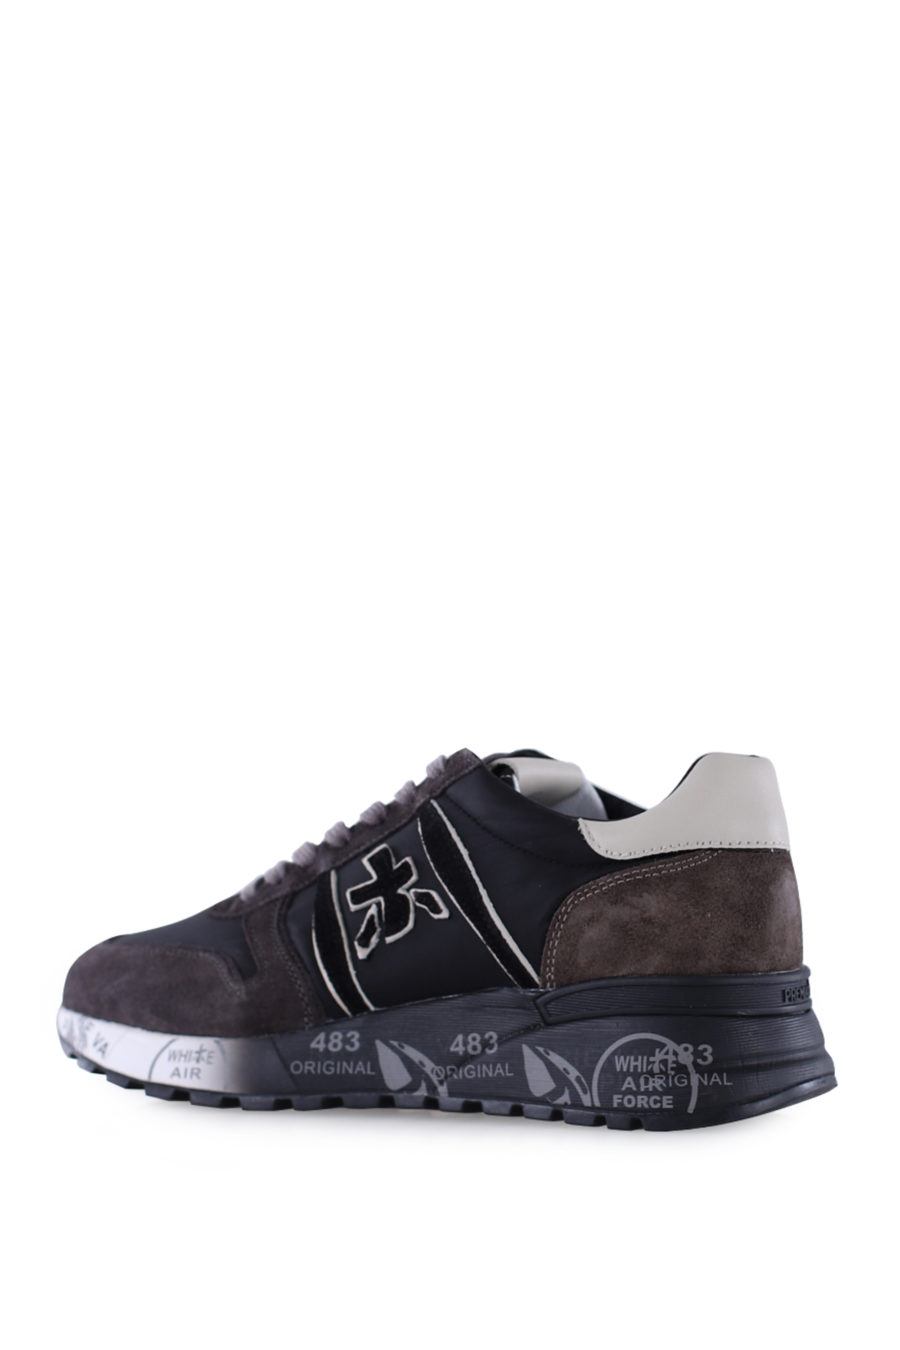 Zapatillas "Lander" color marrón y negro - IMG 9964